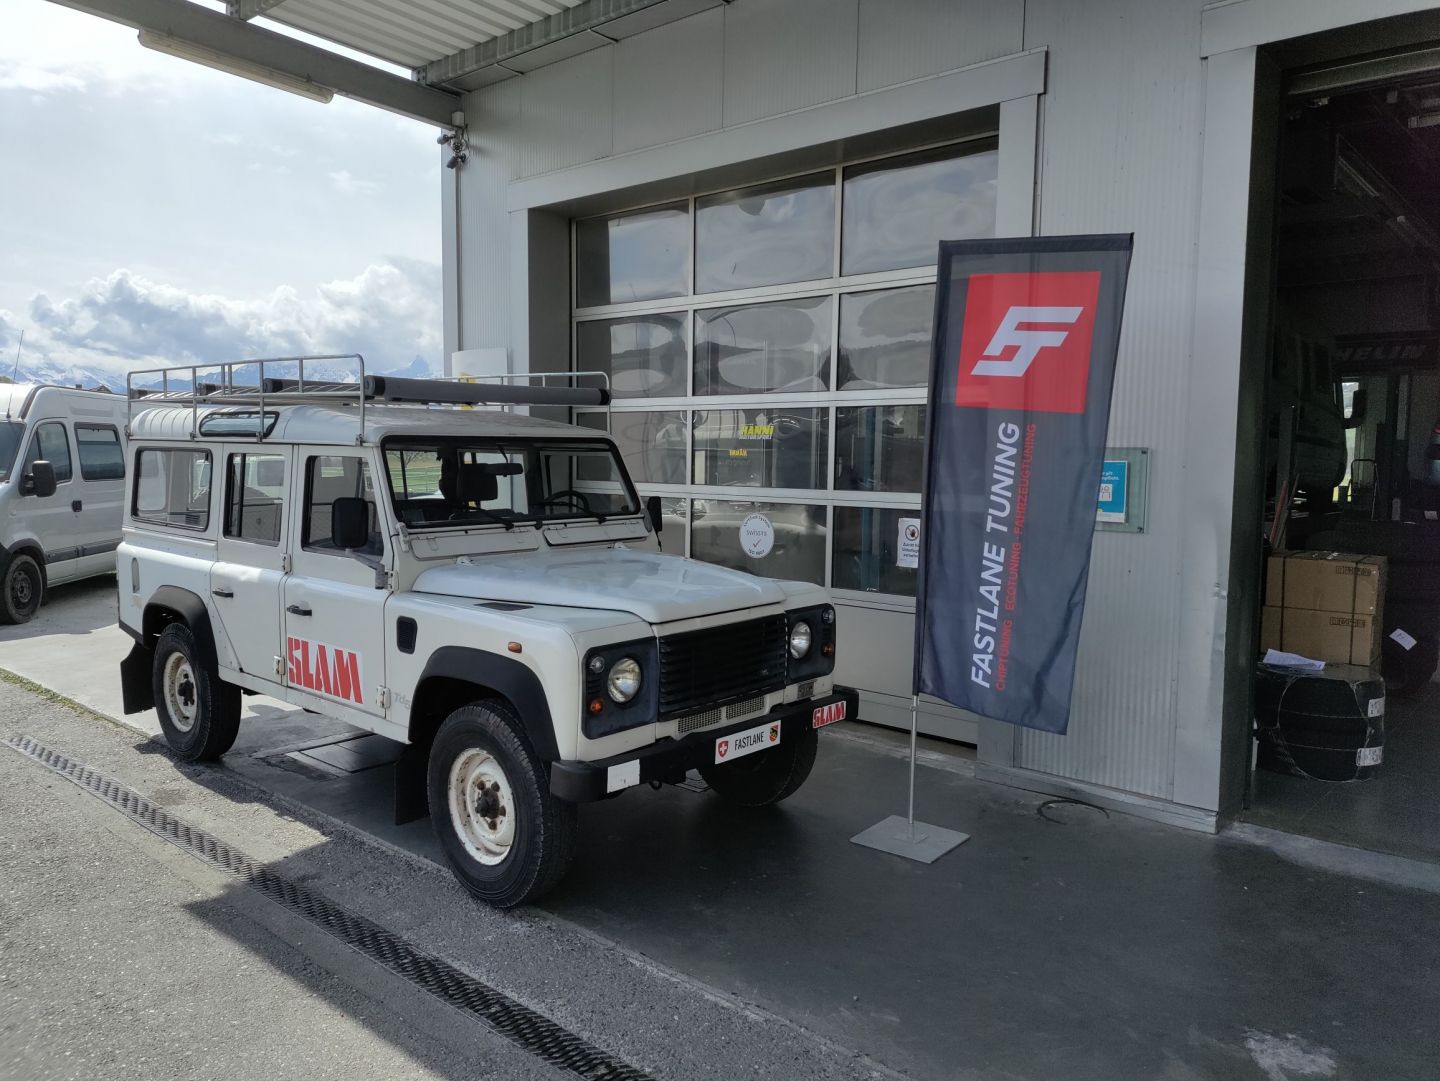 Ein weisser 110 Defender Td5 parkiert vor der Garage neben der Fastlane Tuning Schweiz Flagge